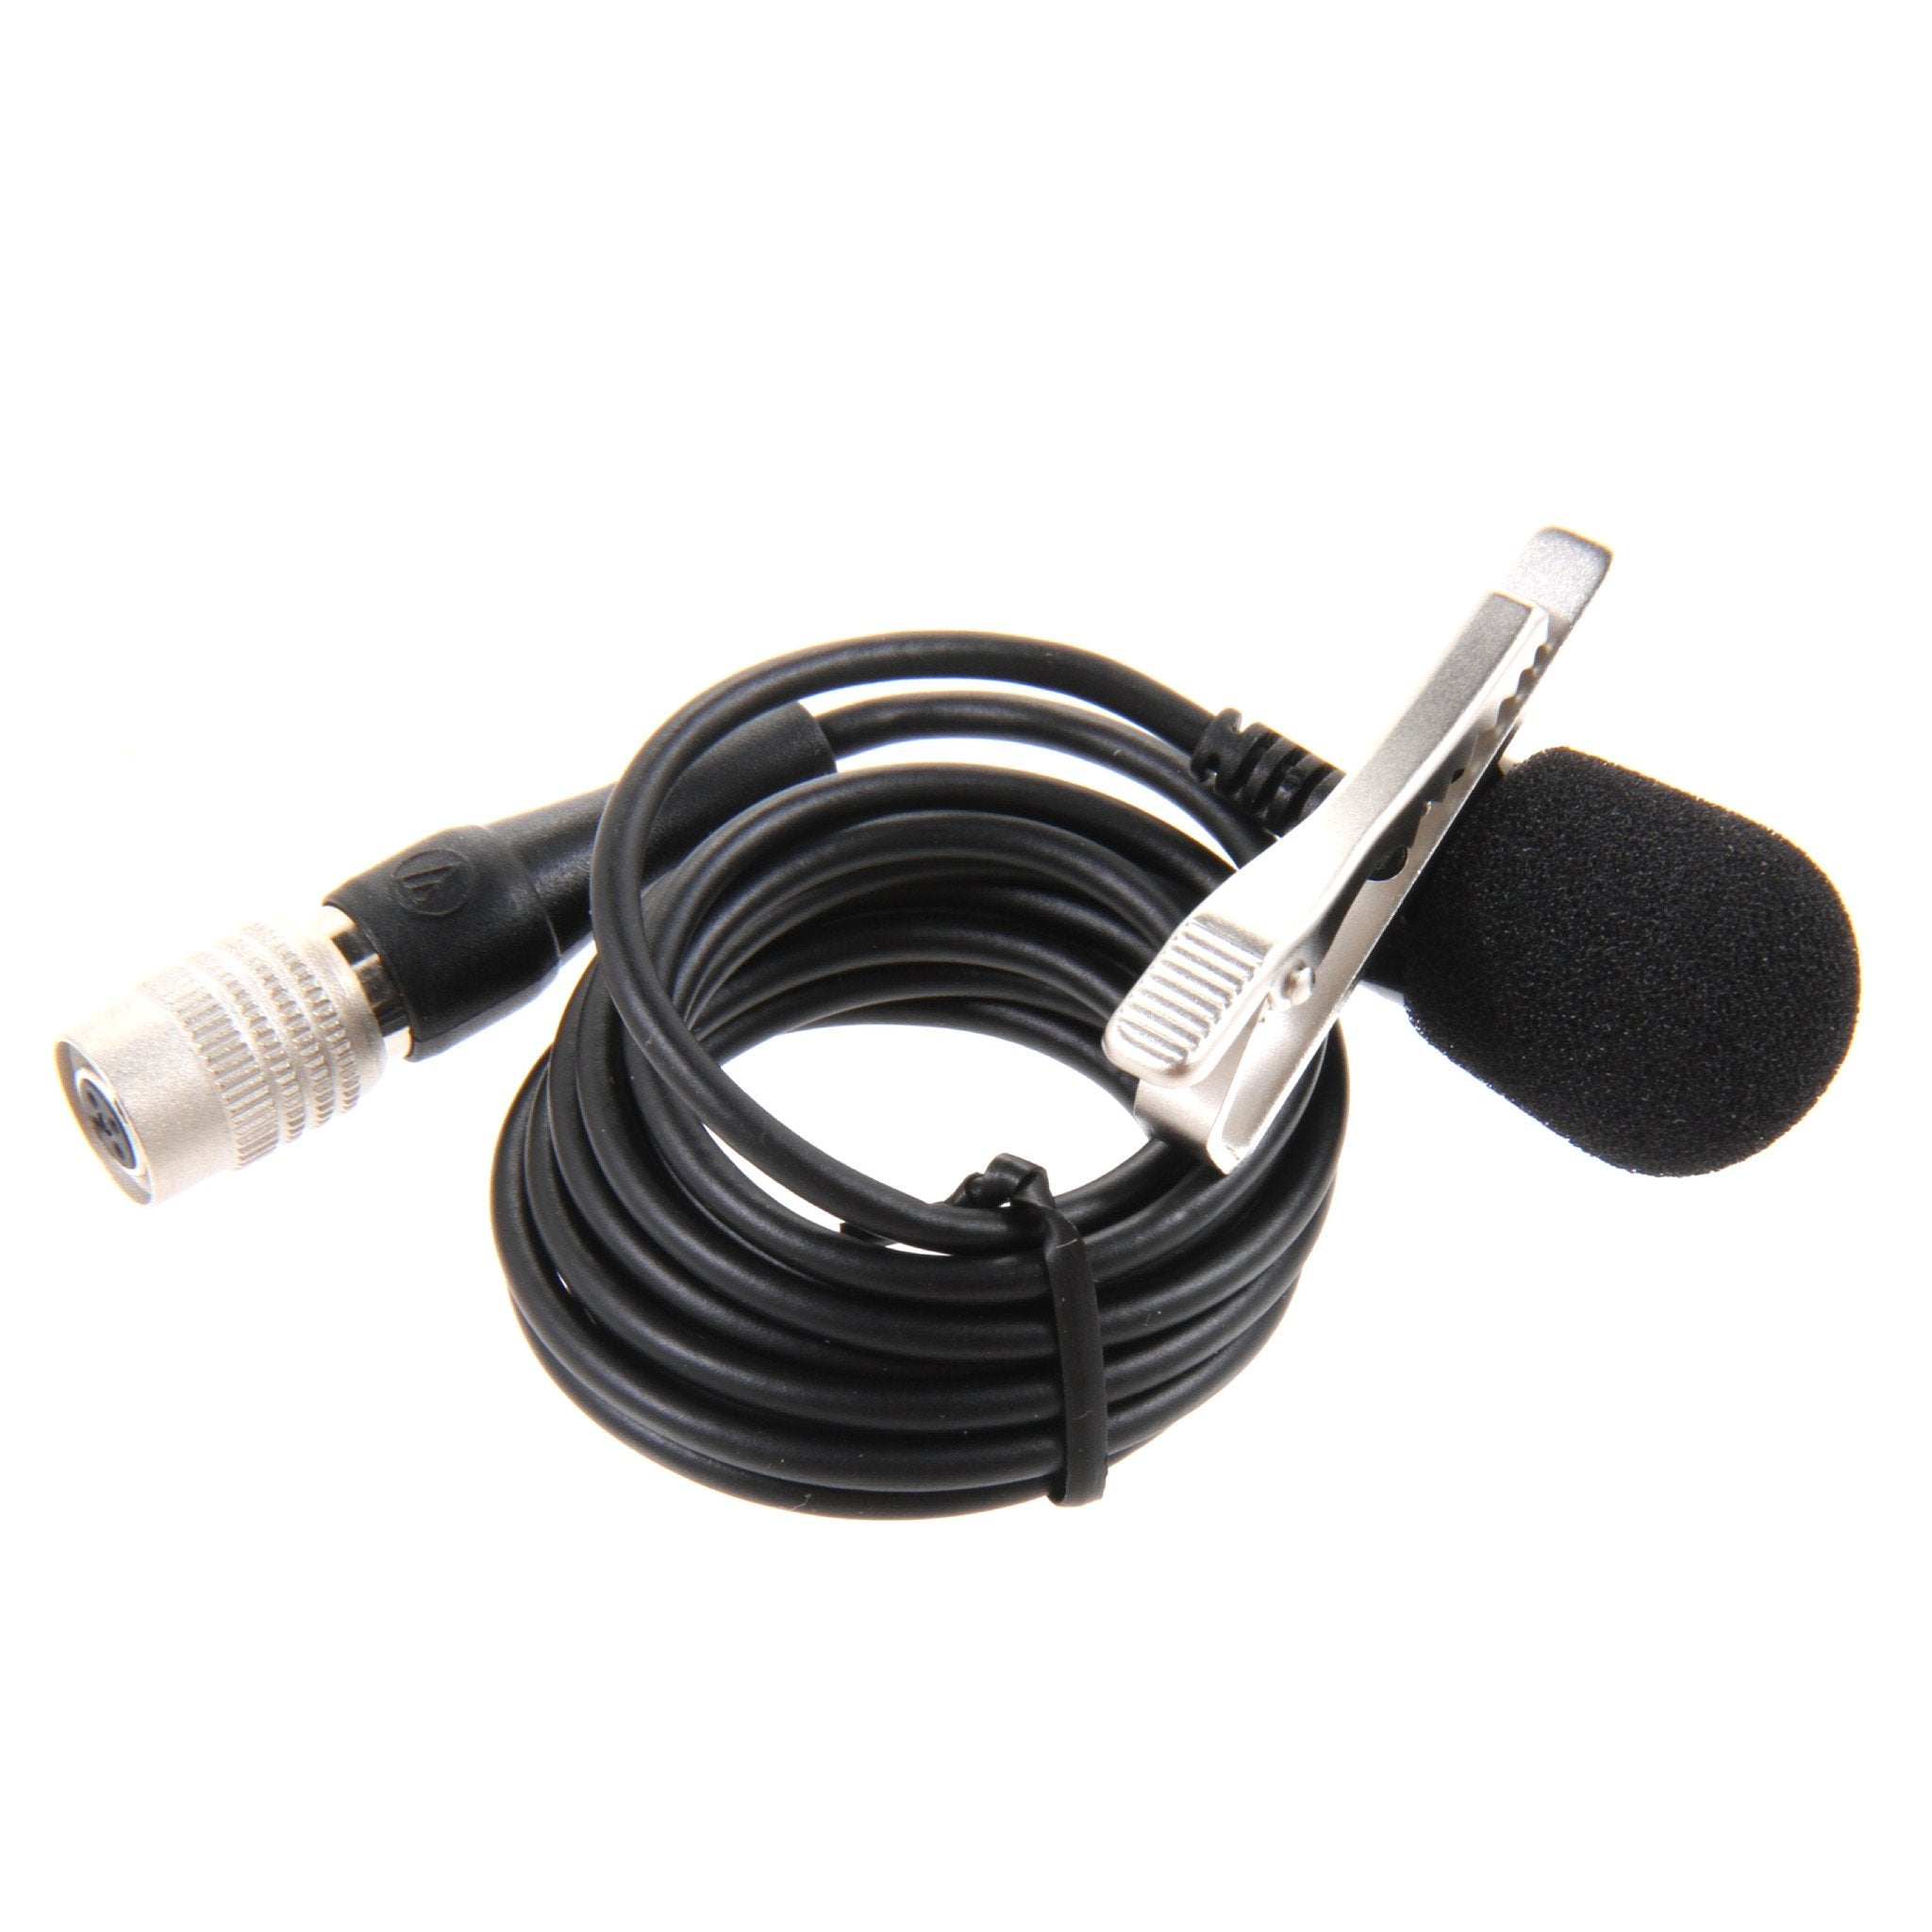 Audio-Technica: AT829CW Mini Uni Lavalier Microphone - OPEN BOX SPECIAL